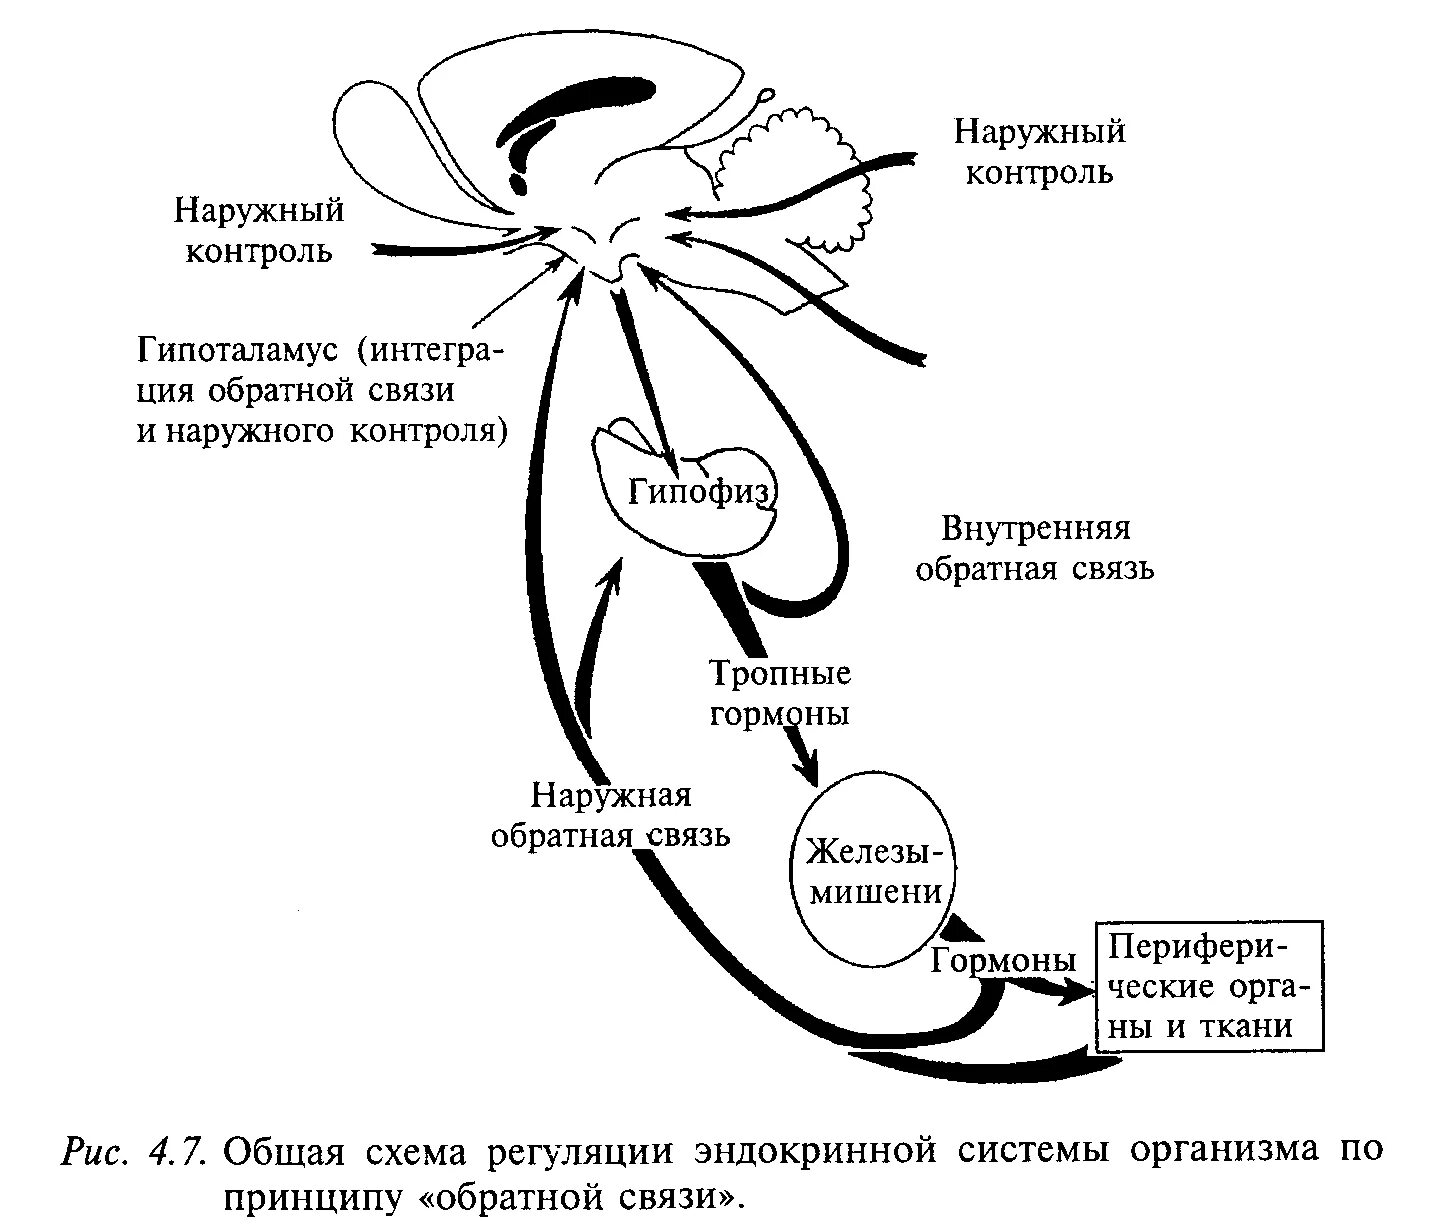 Схема регуляции эндокринной системы. Схема регуляции функций желез внутренней секреции. Схема регуляции нервной системы. Механизмы регуляции функции эндокринной системы.